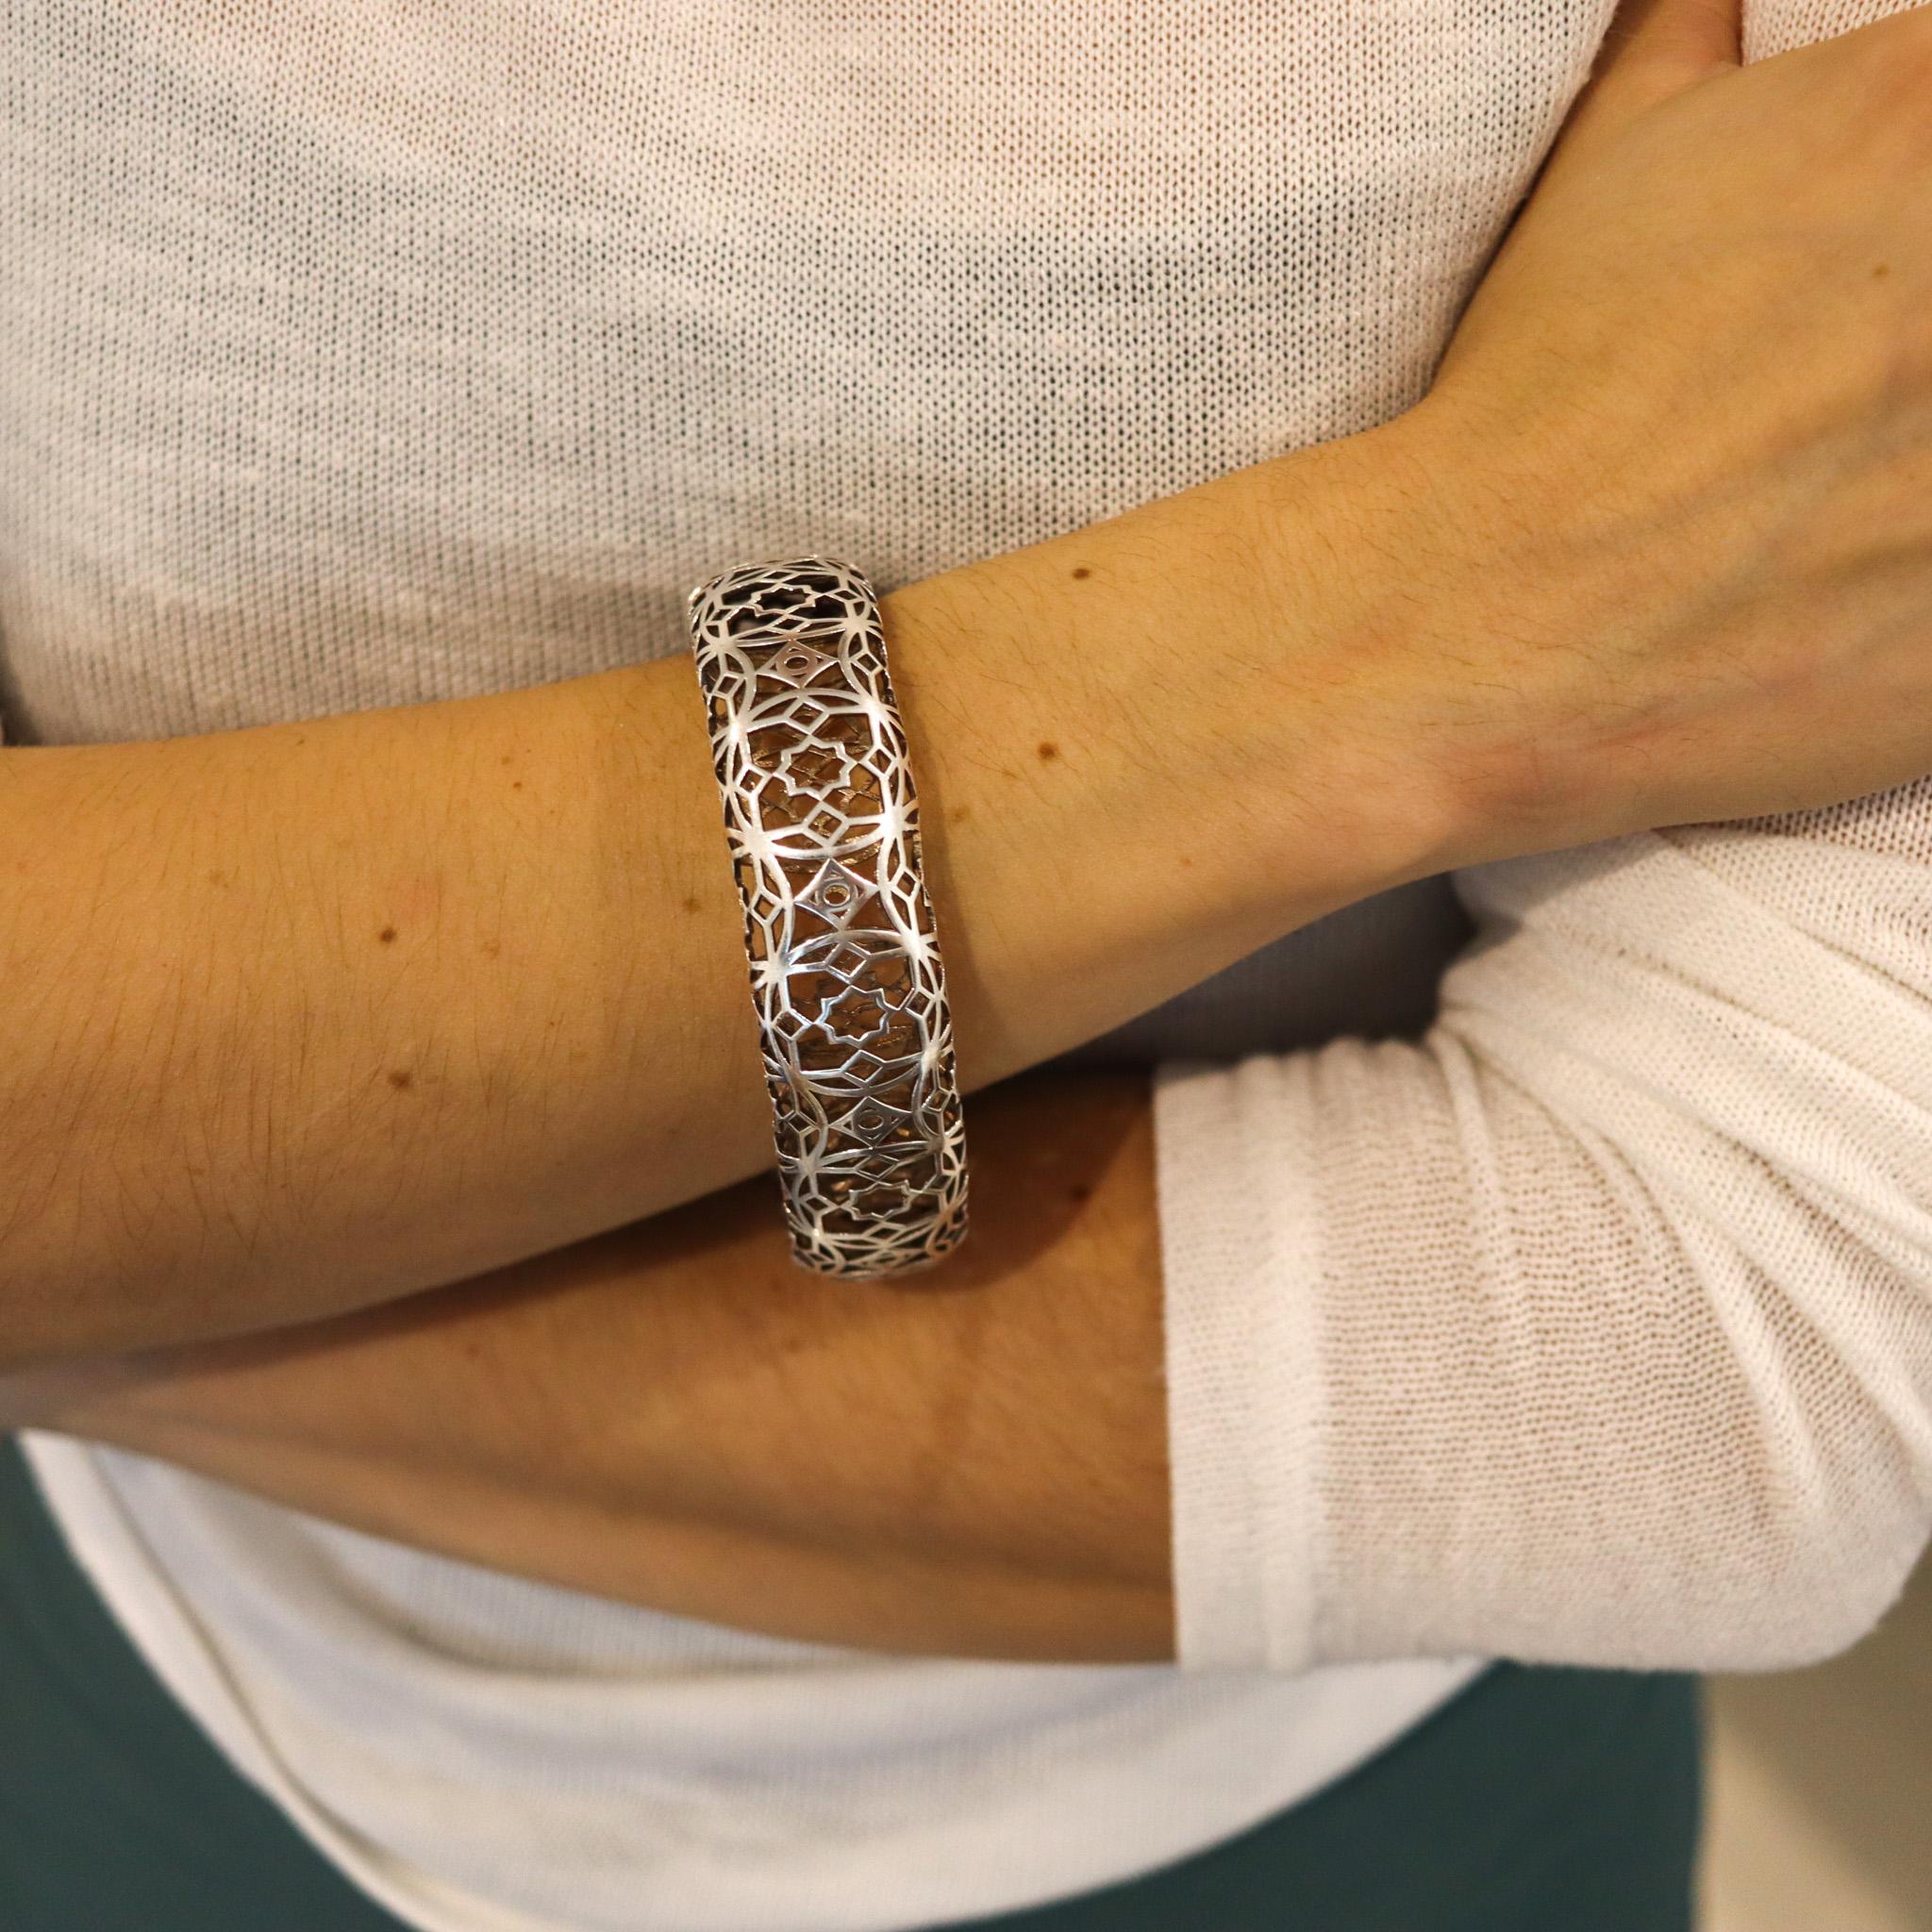 Bracelet Marrakesh conçu par Paloma Picasso pour Tiffany & Co.

Magnifique bracelet tridimensionnel, créé par Paloma Picasso pour les Studios Tiffany. Ce bracelet rare est issu de la collection emblématique Marrakesh, réalisé en argent massif